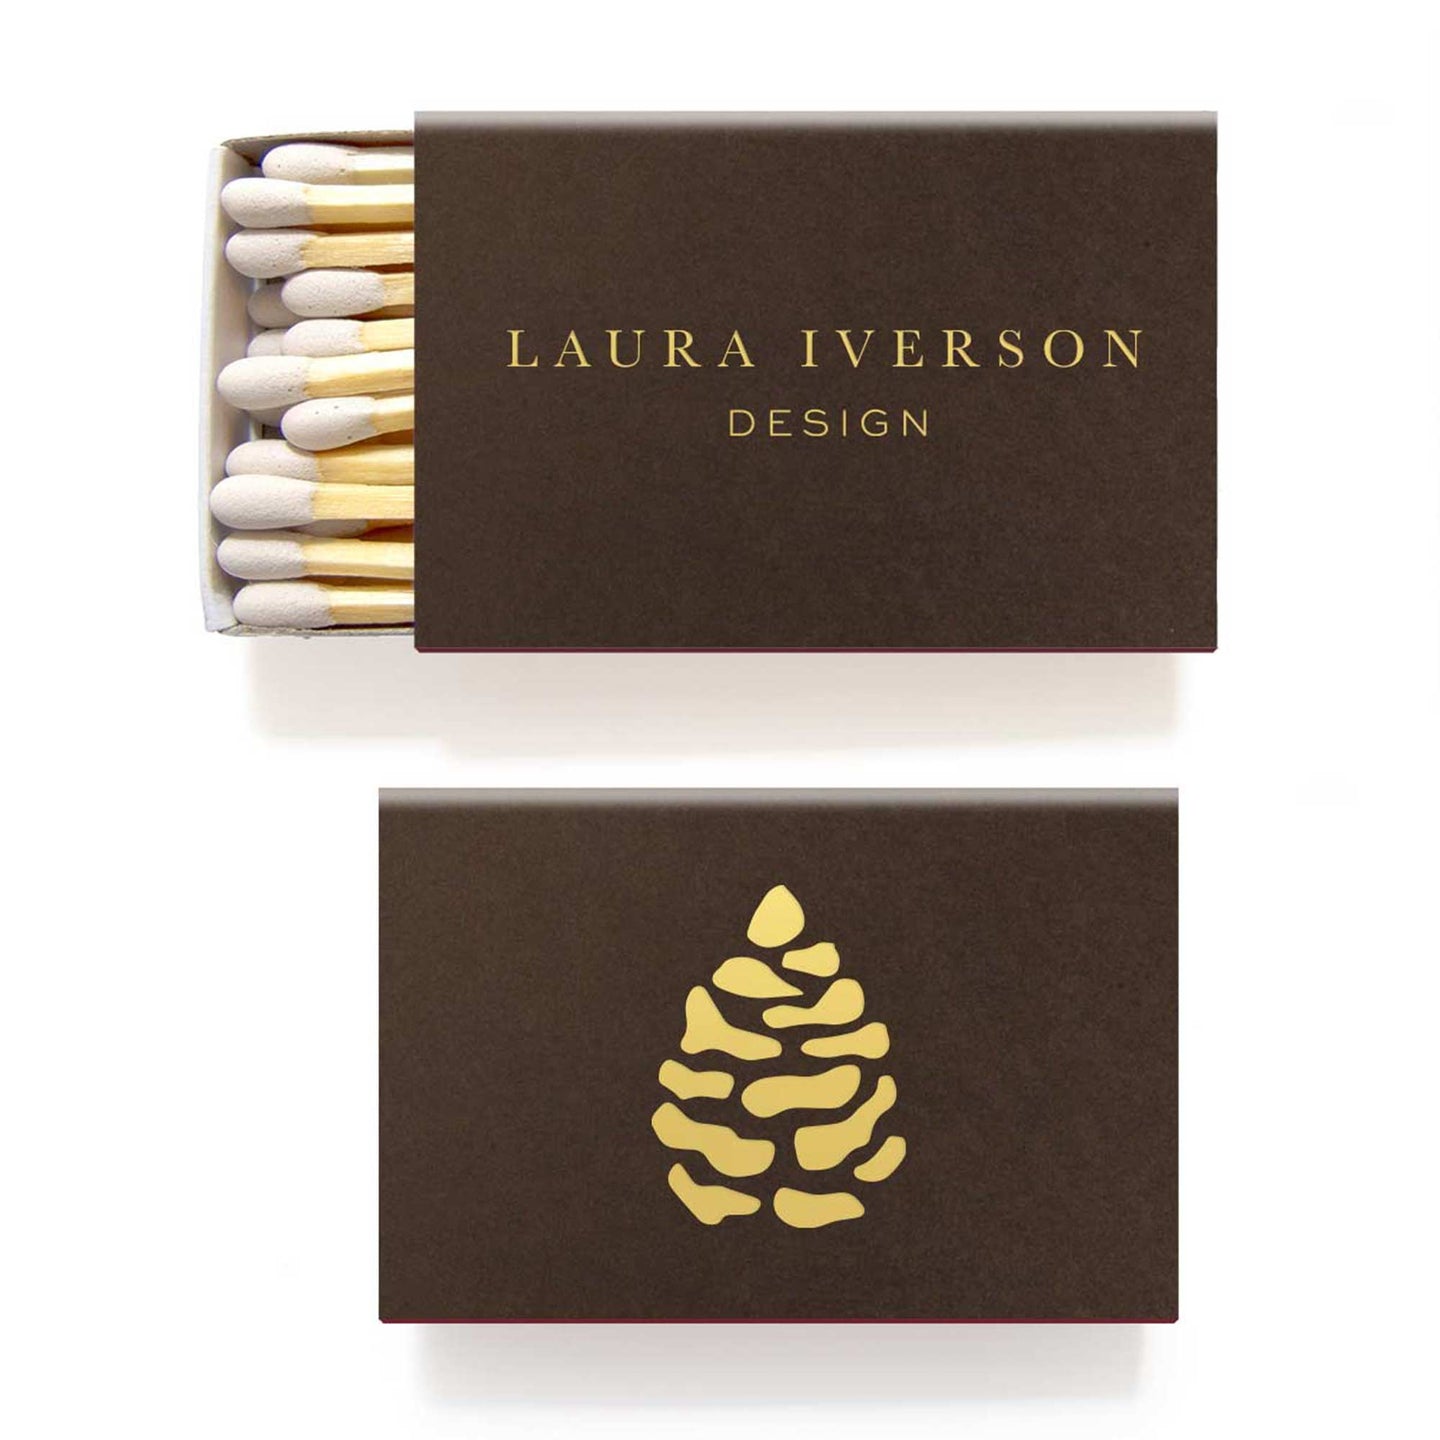 50 Custom Matchboxes for Laura